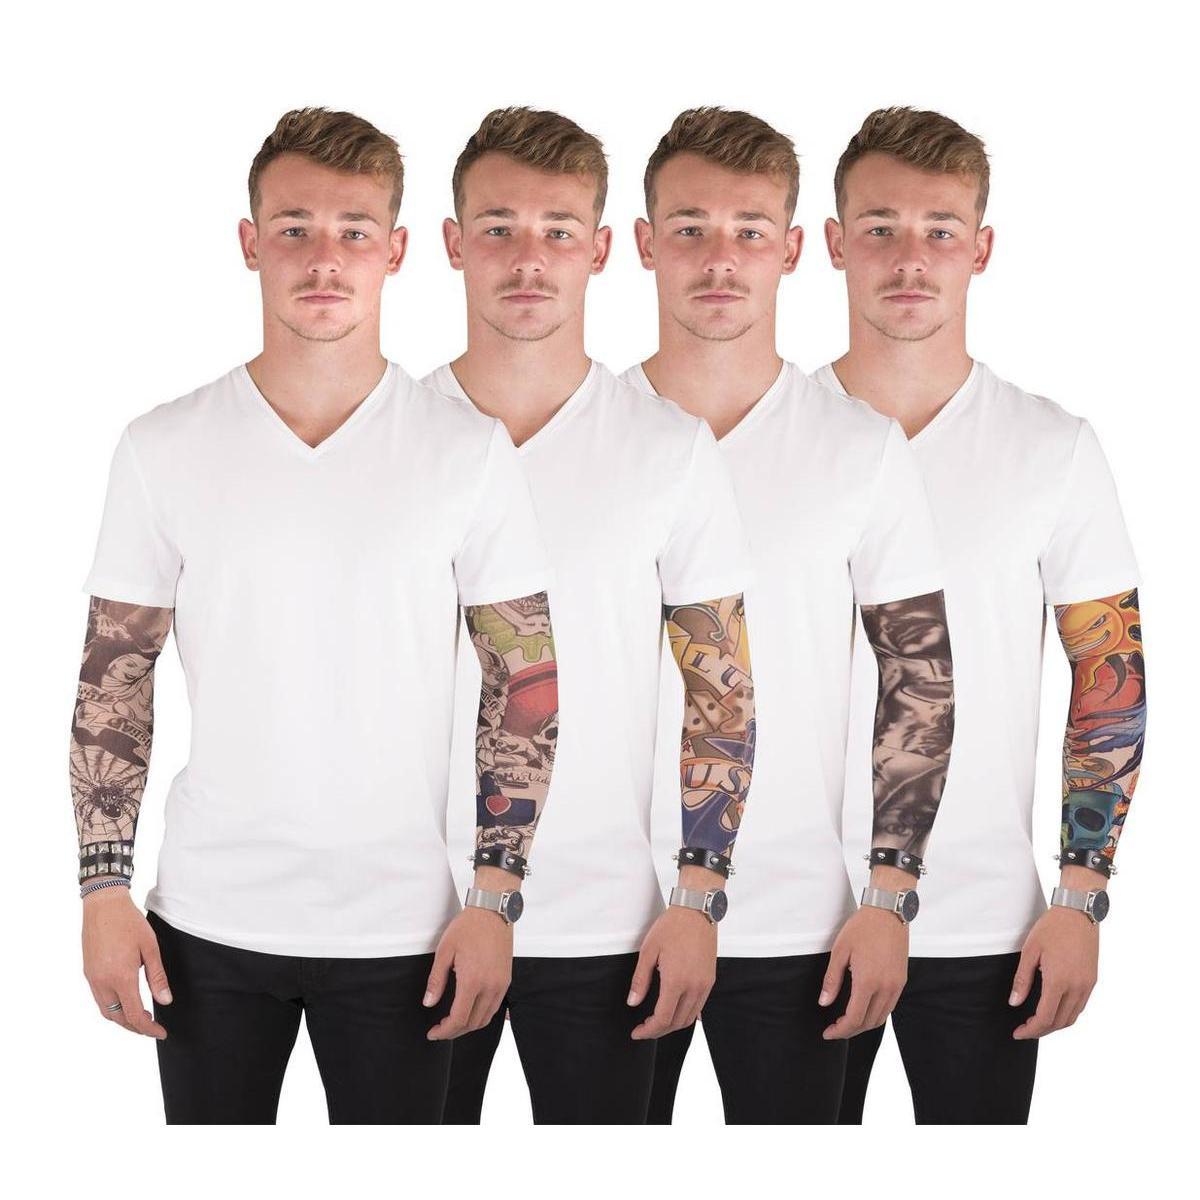 Manche faux tatouages en polyester - 42 x 10 cm - Multicolore